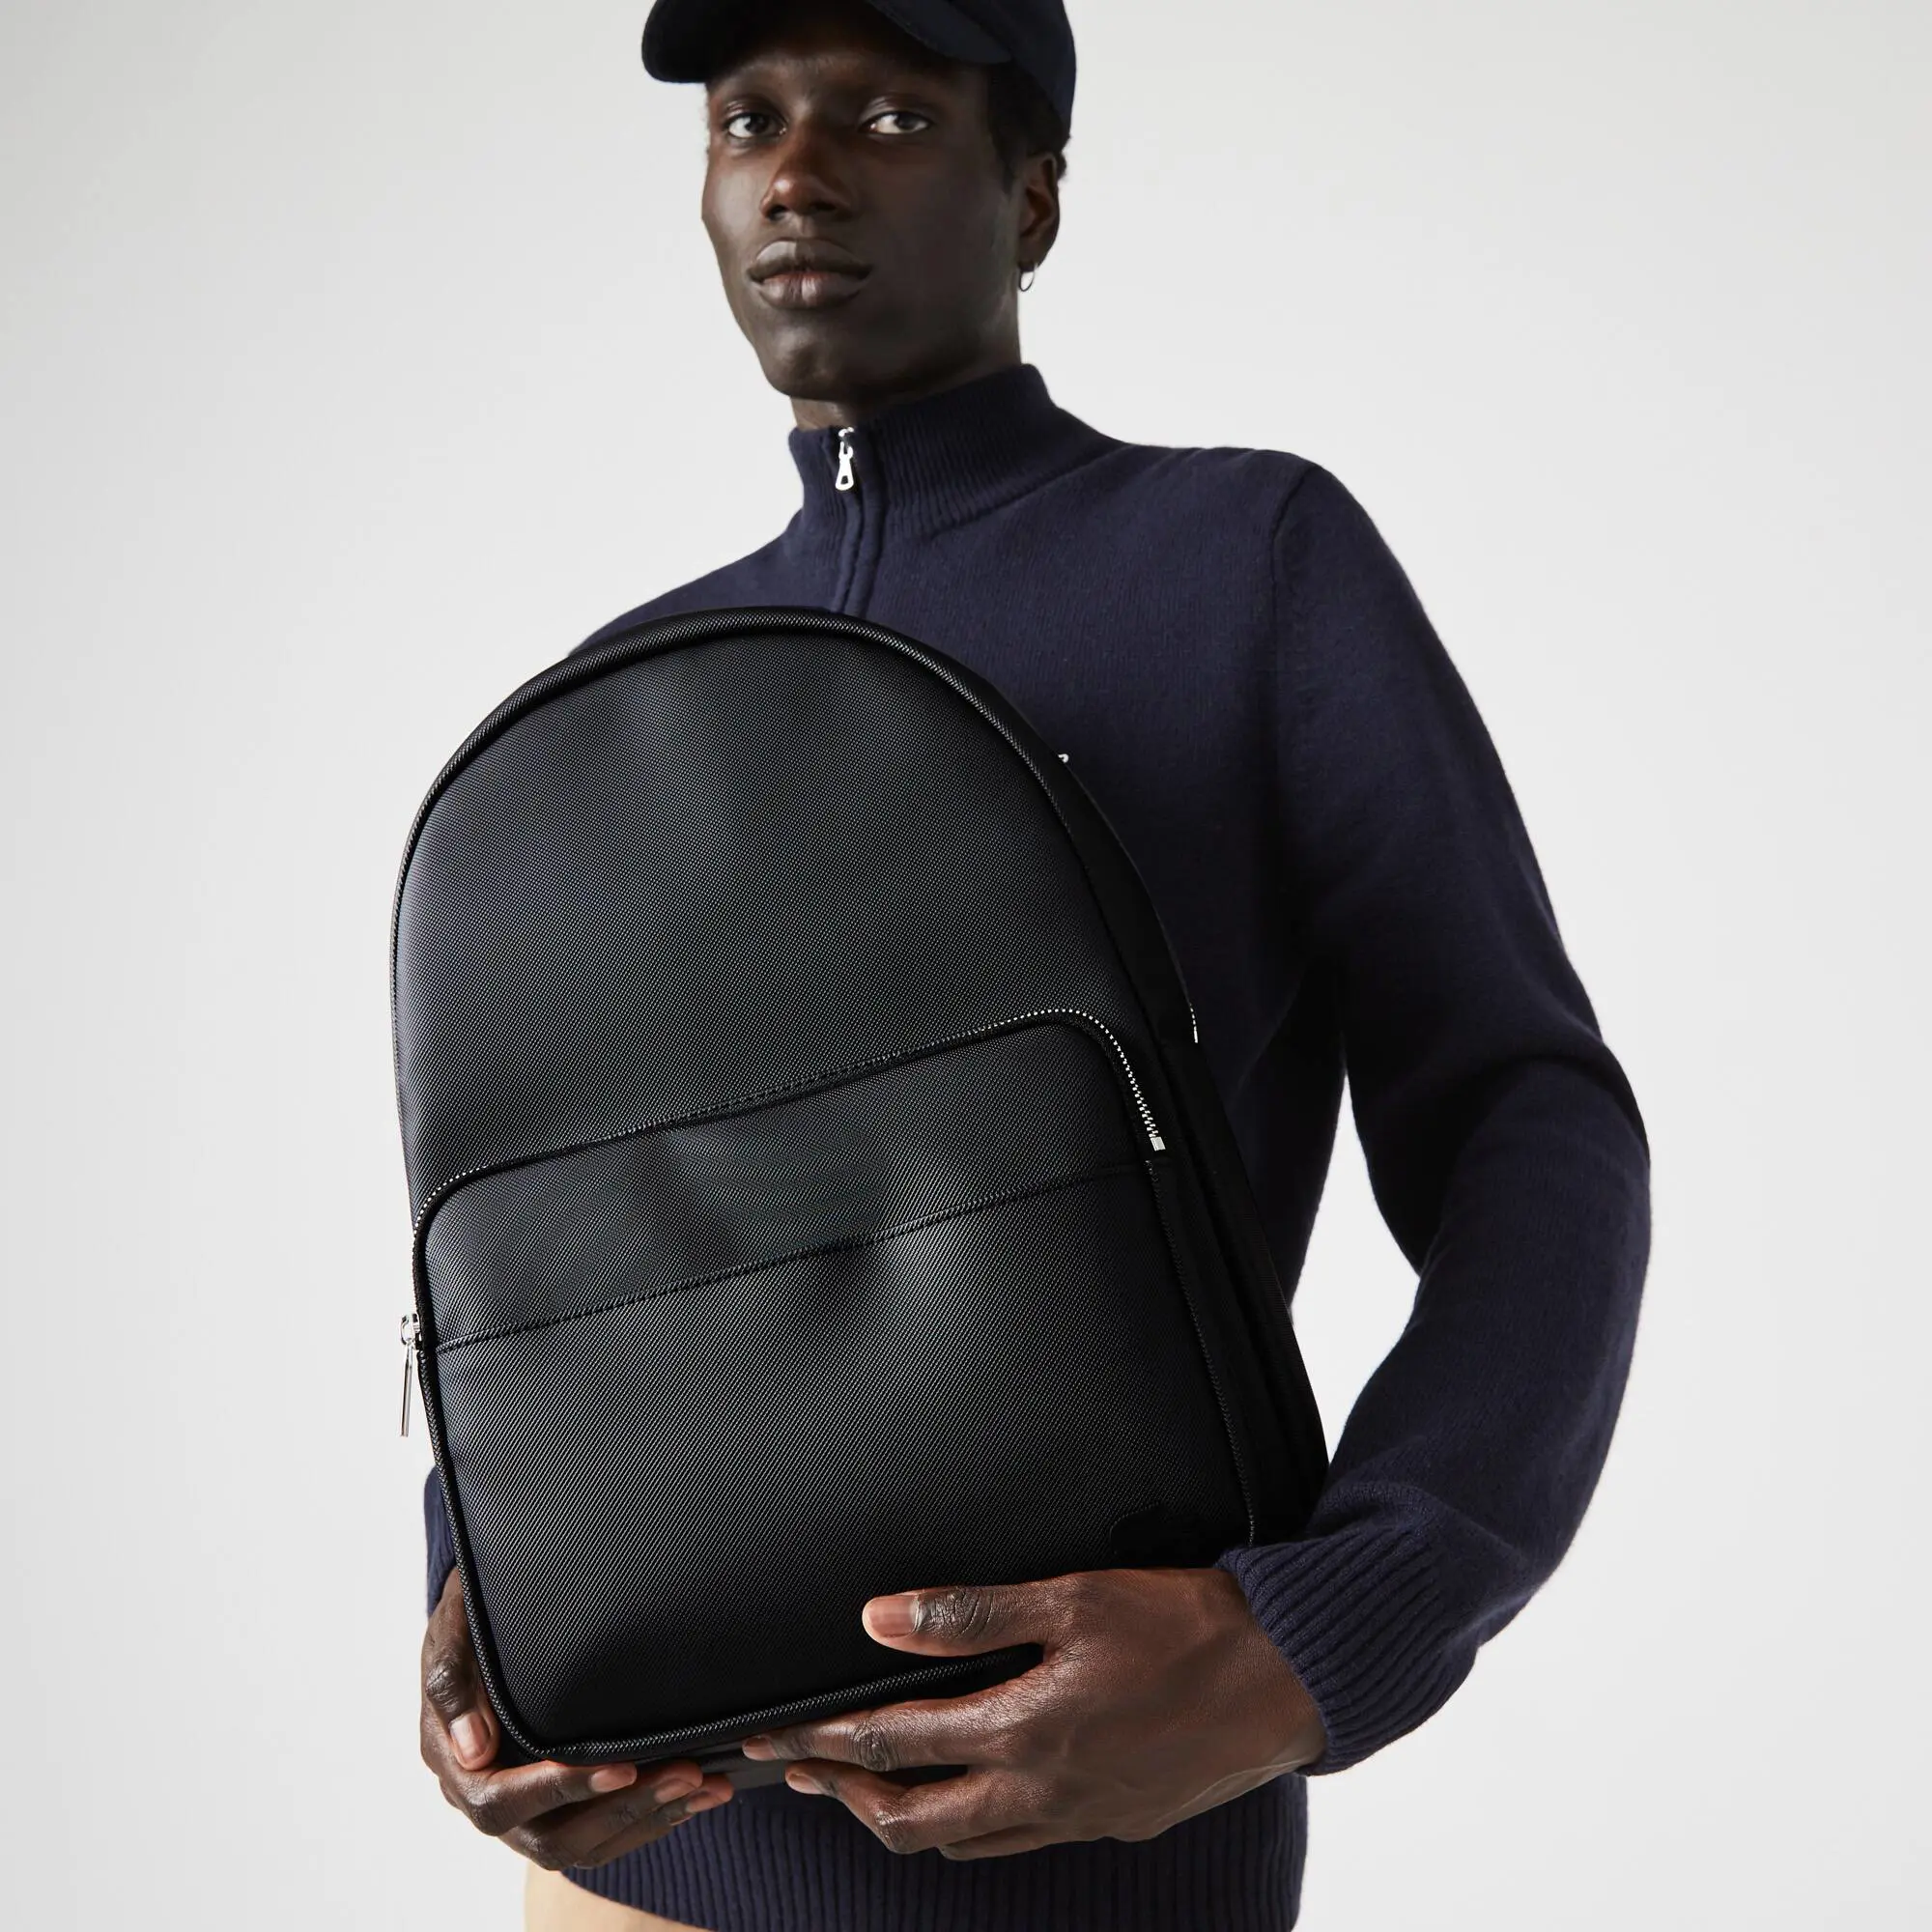 Lacoste Men's Classic Petit Piqué Backpack. 1